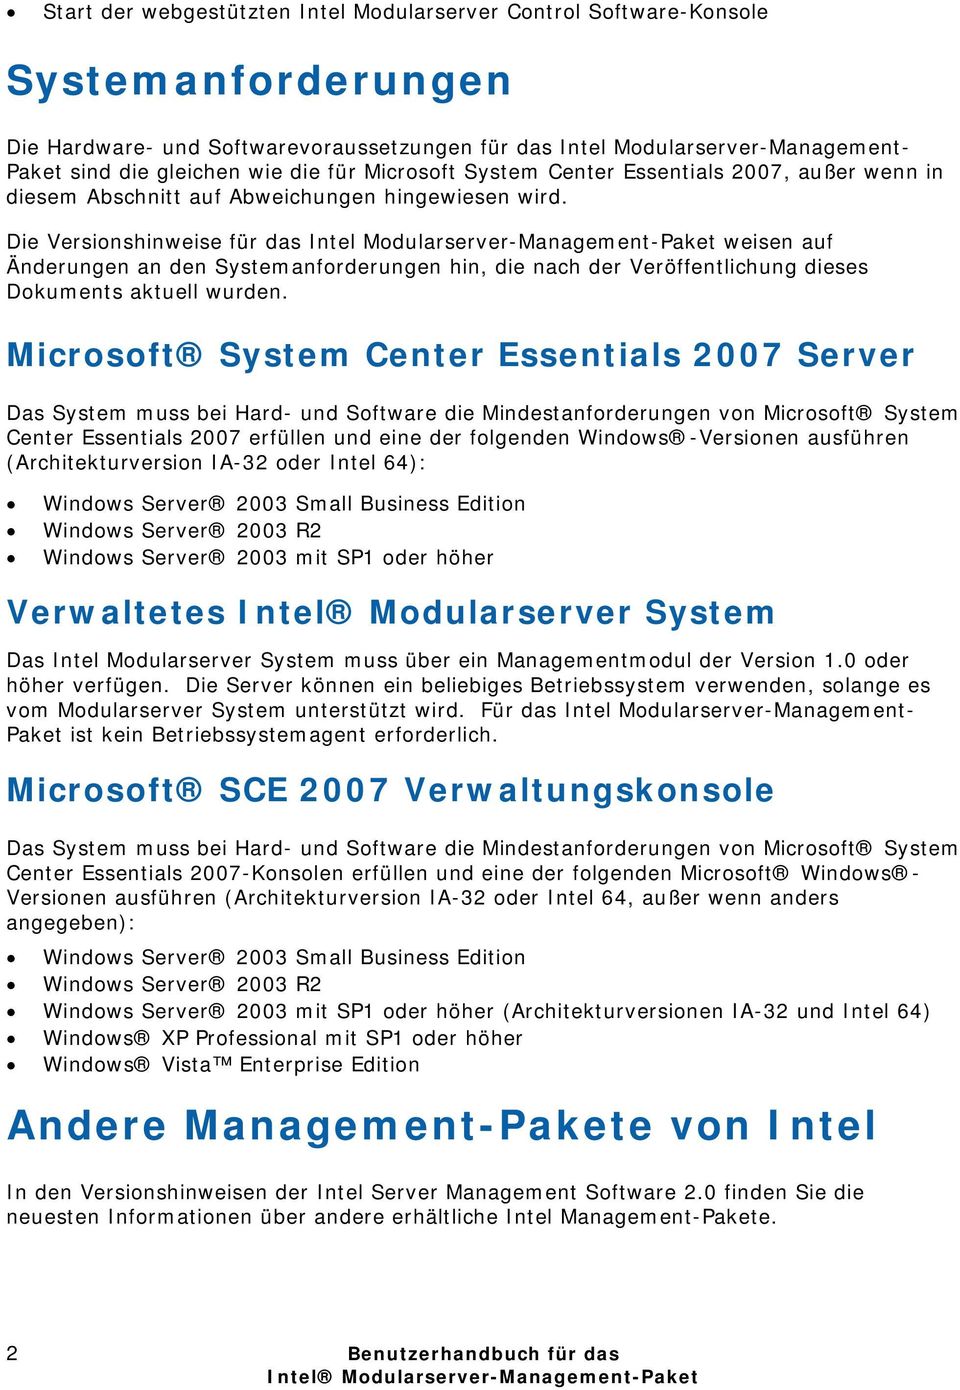 Die Versionshinweise für das Intel Modularserver-Management-Paket weisen auf Änderungen an den Systemanforderungen hin, die nach der Veröffentlichung dieses Dokuments aktuell wurden.